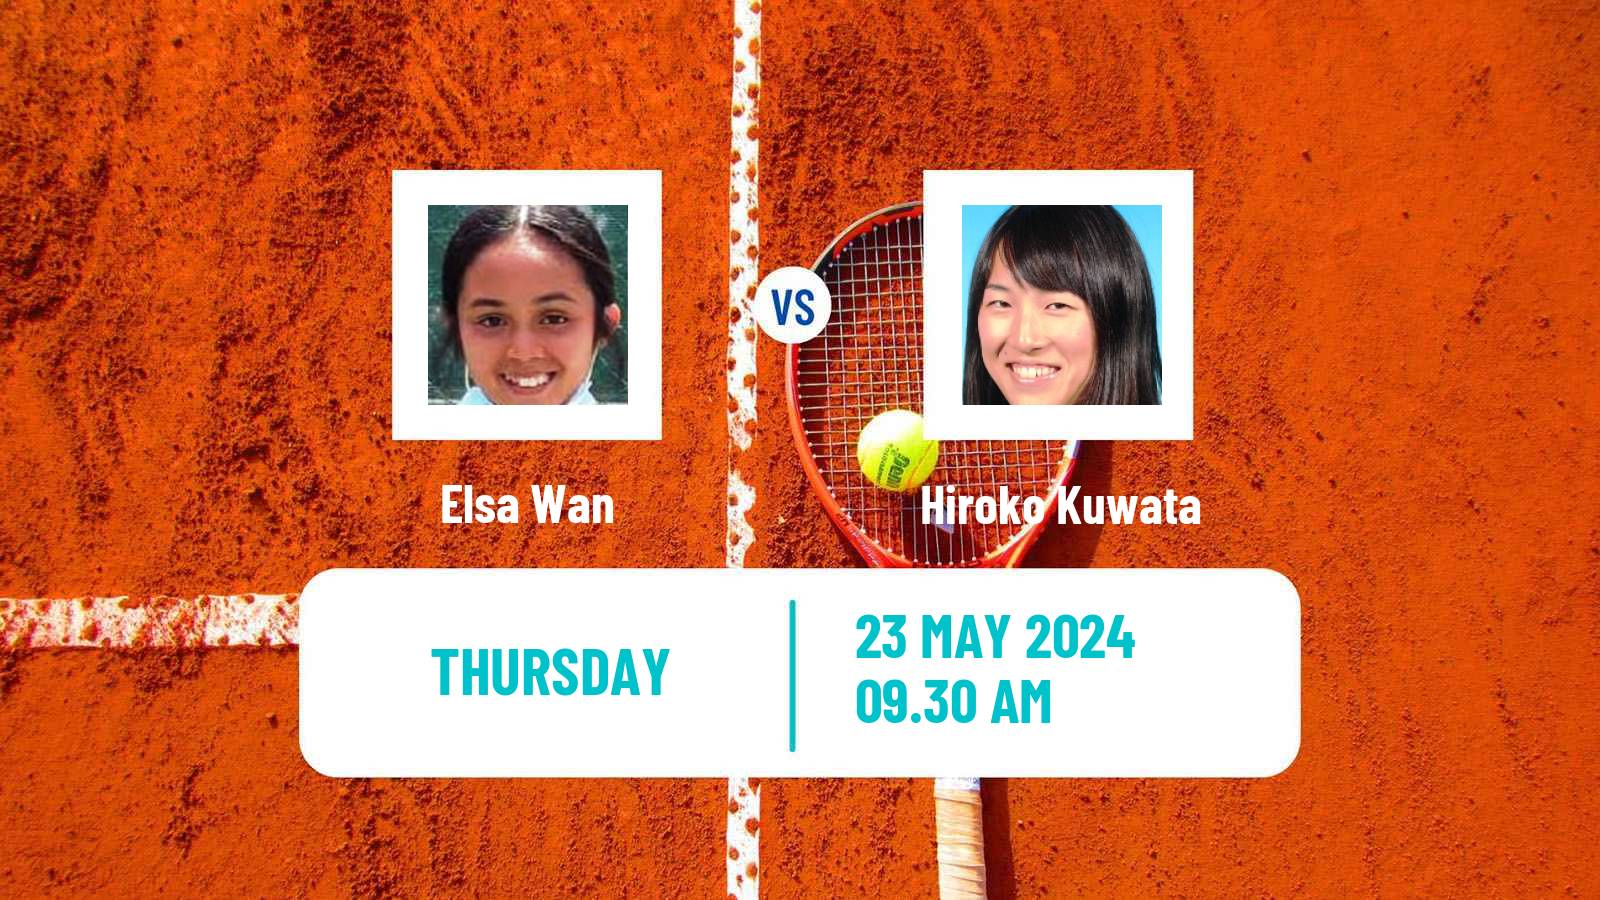 Tennis ITF W35 Santo Domingo 3 Women Elsa Wan - Hiroko Kuwata